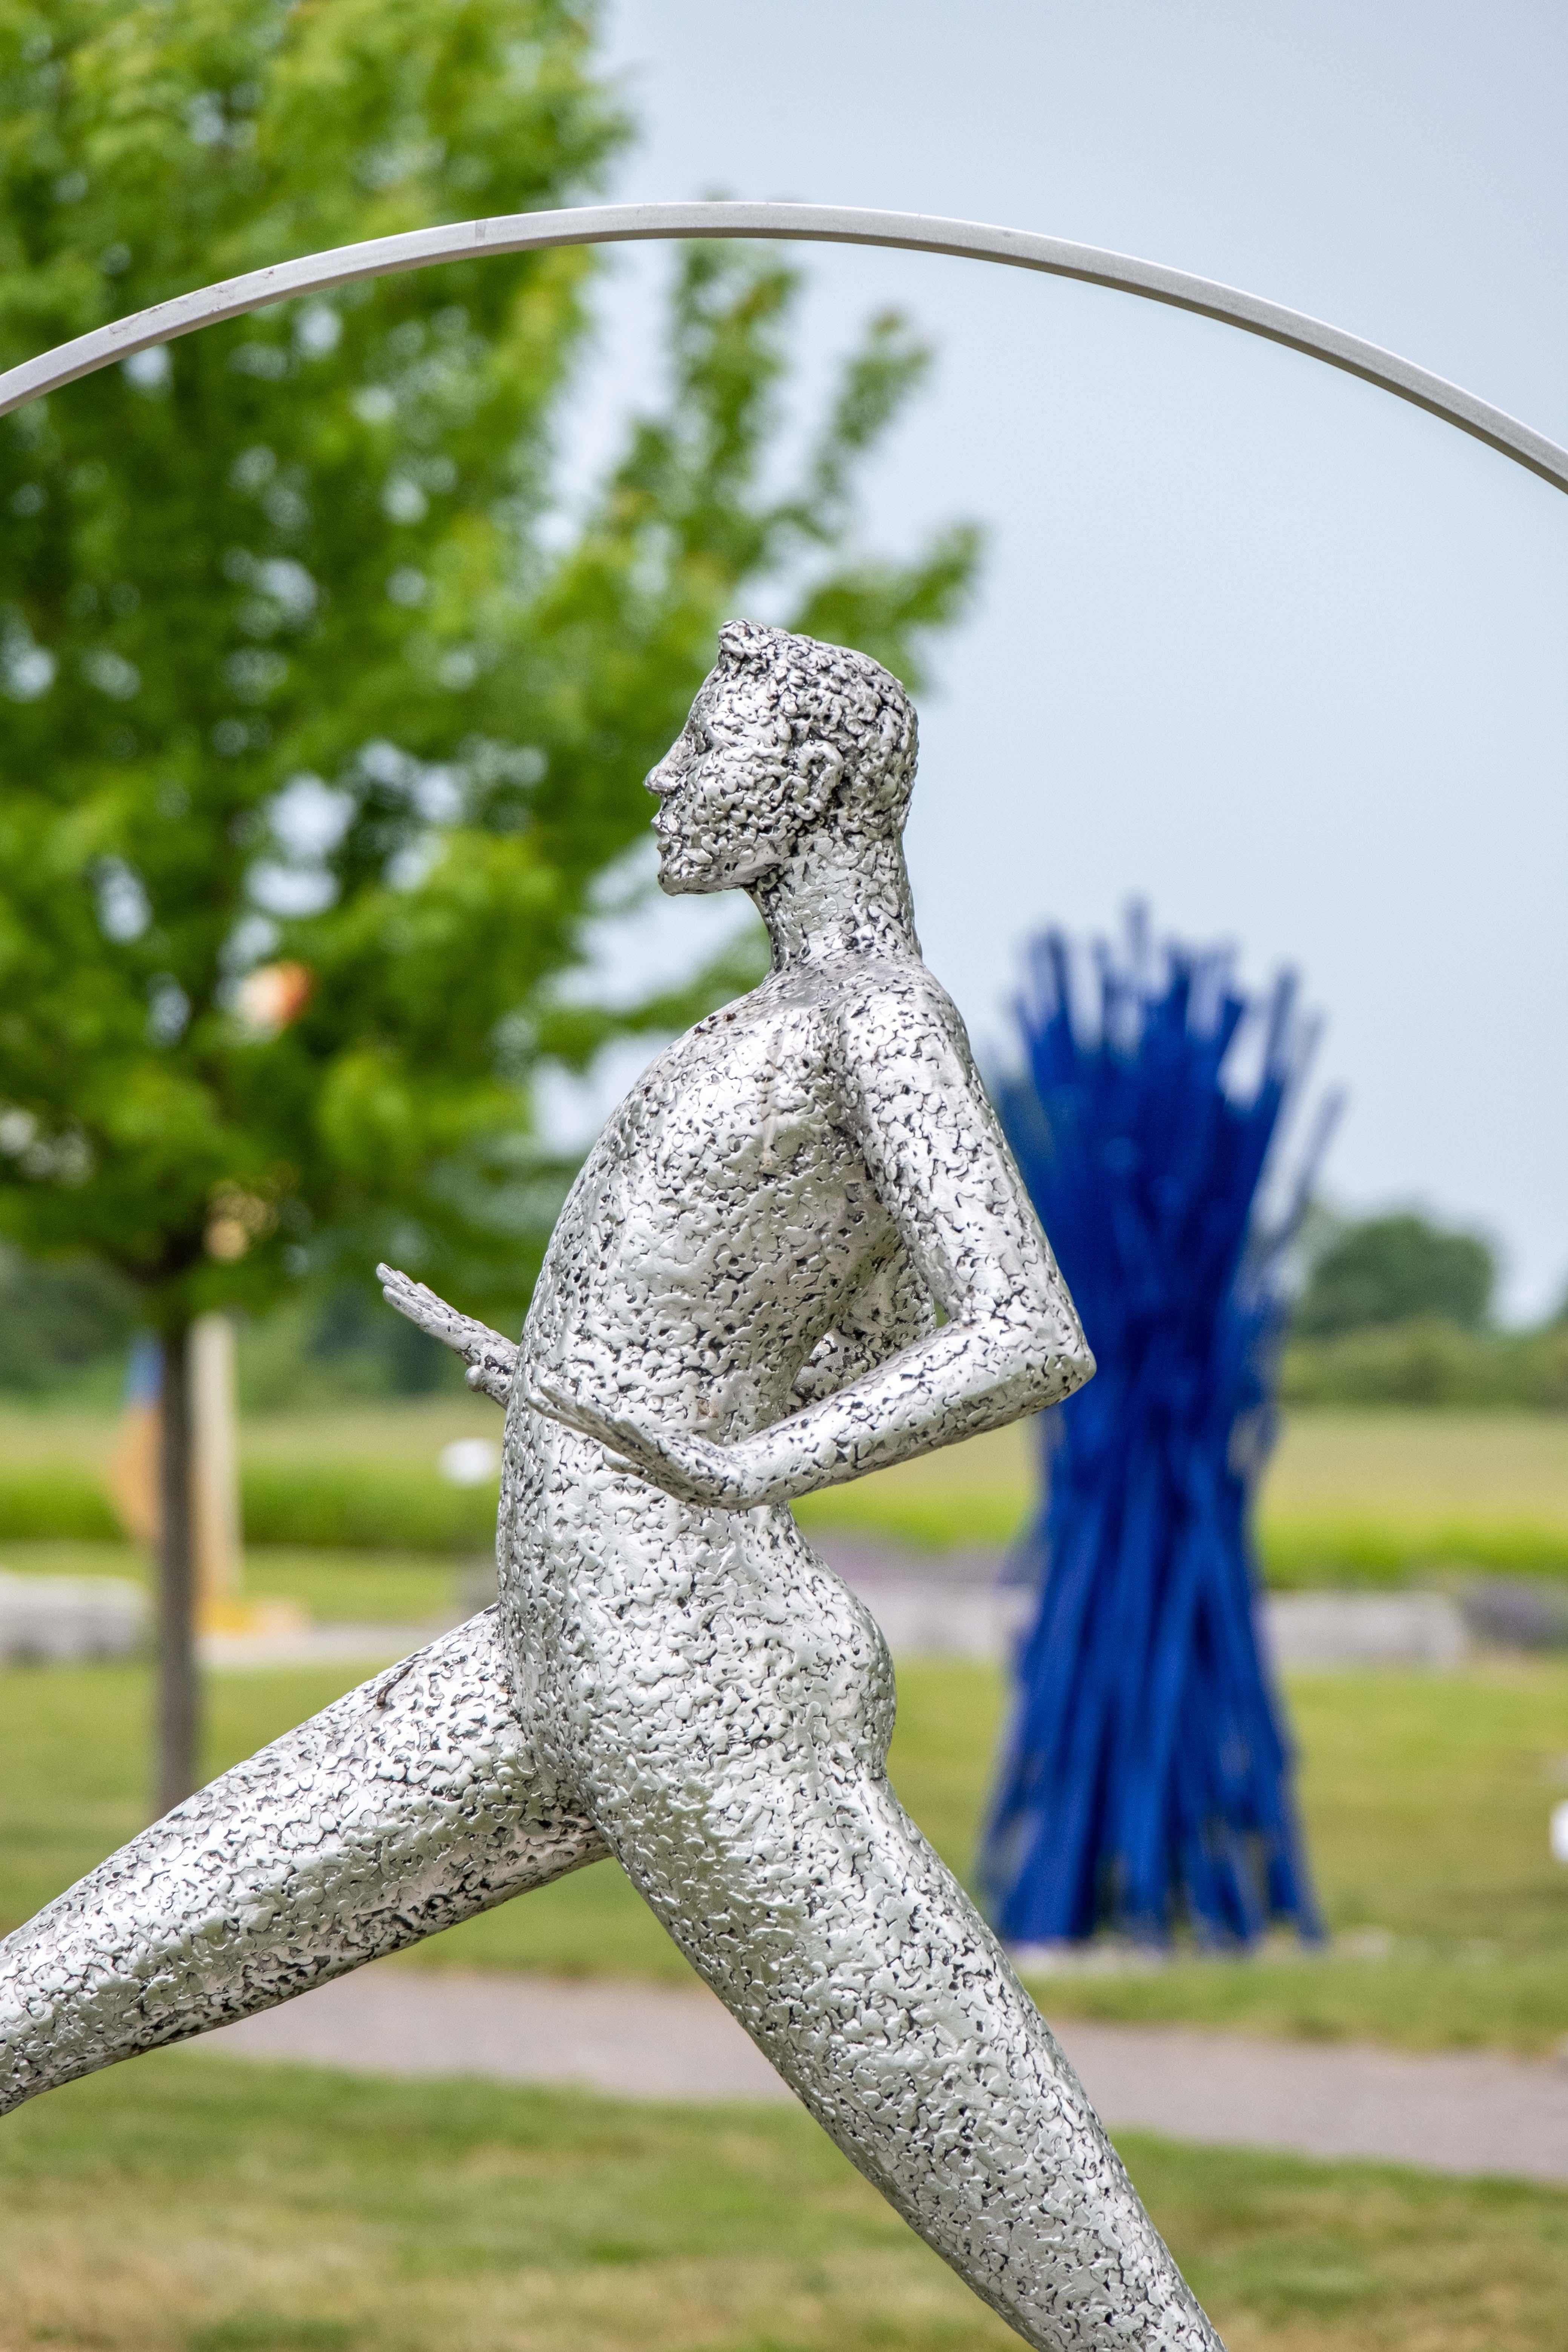 Engageante et ludique, l'œuvre du sculpteur québécois Paul Duval contemple souvent l'idée d'équilibre et de déséquilibre. Desequilibre